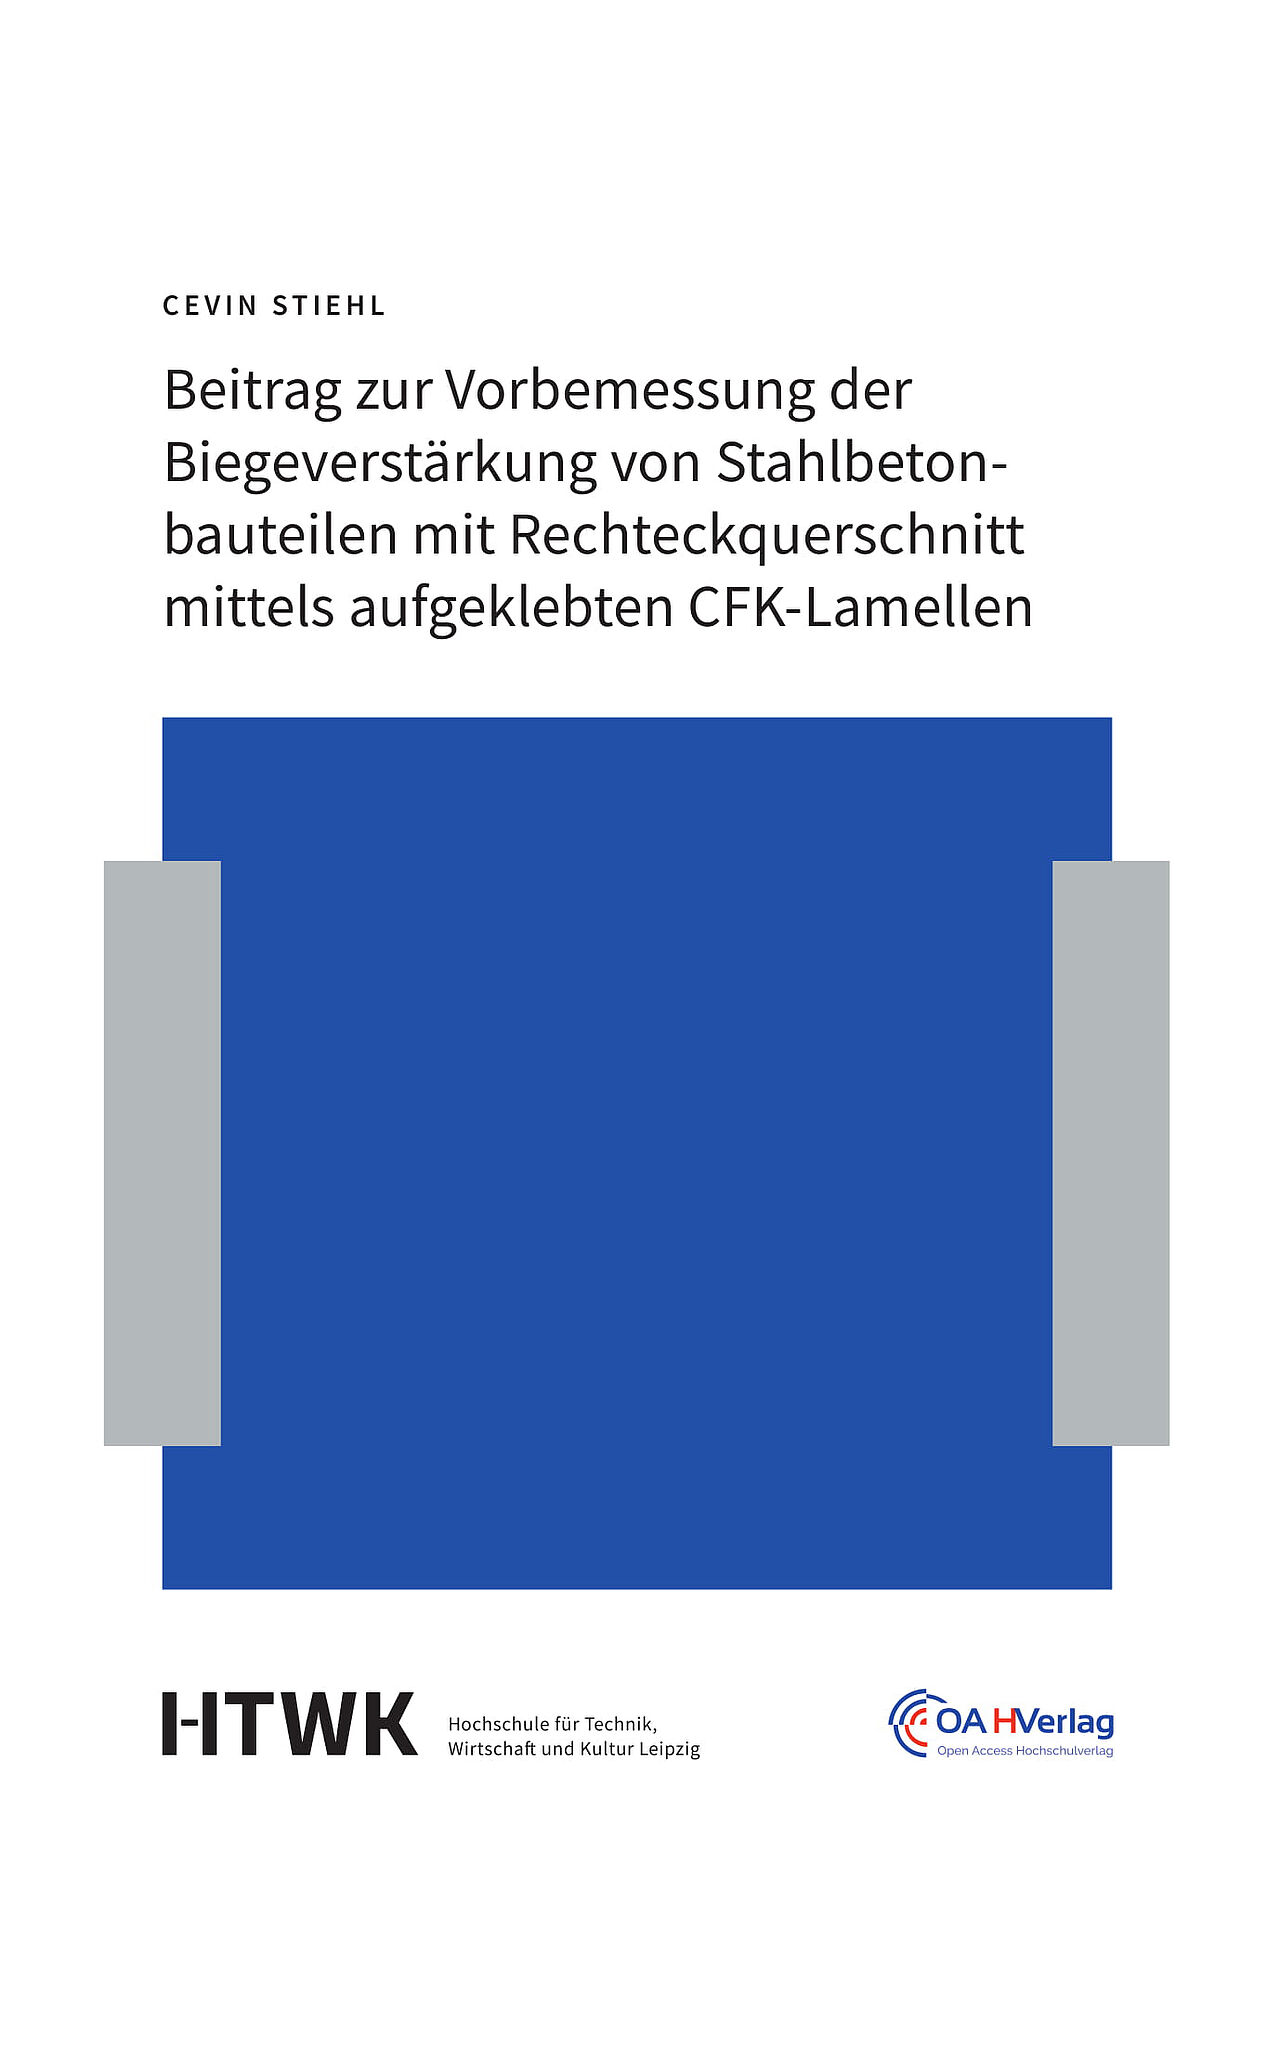 Cover des Buches "Beitrag zur Vorbemessung der Biegeverstärkung von Stahlbetonbauteilen mit Rechteckquerschnitt mittels aufgeklebten CFK-Lamellen" von Cevin Stiehl